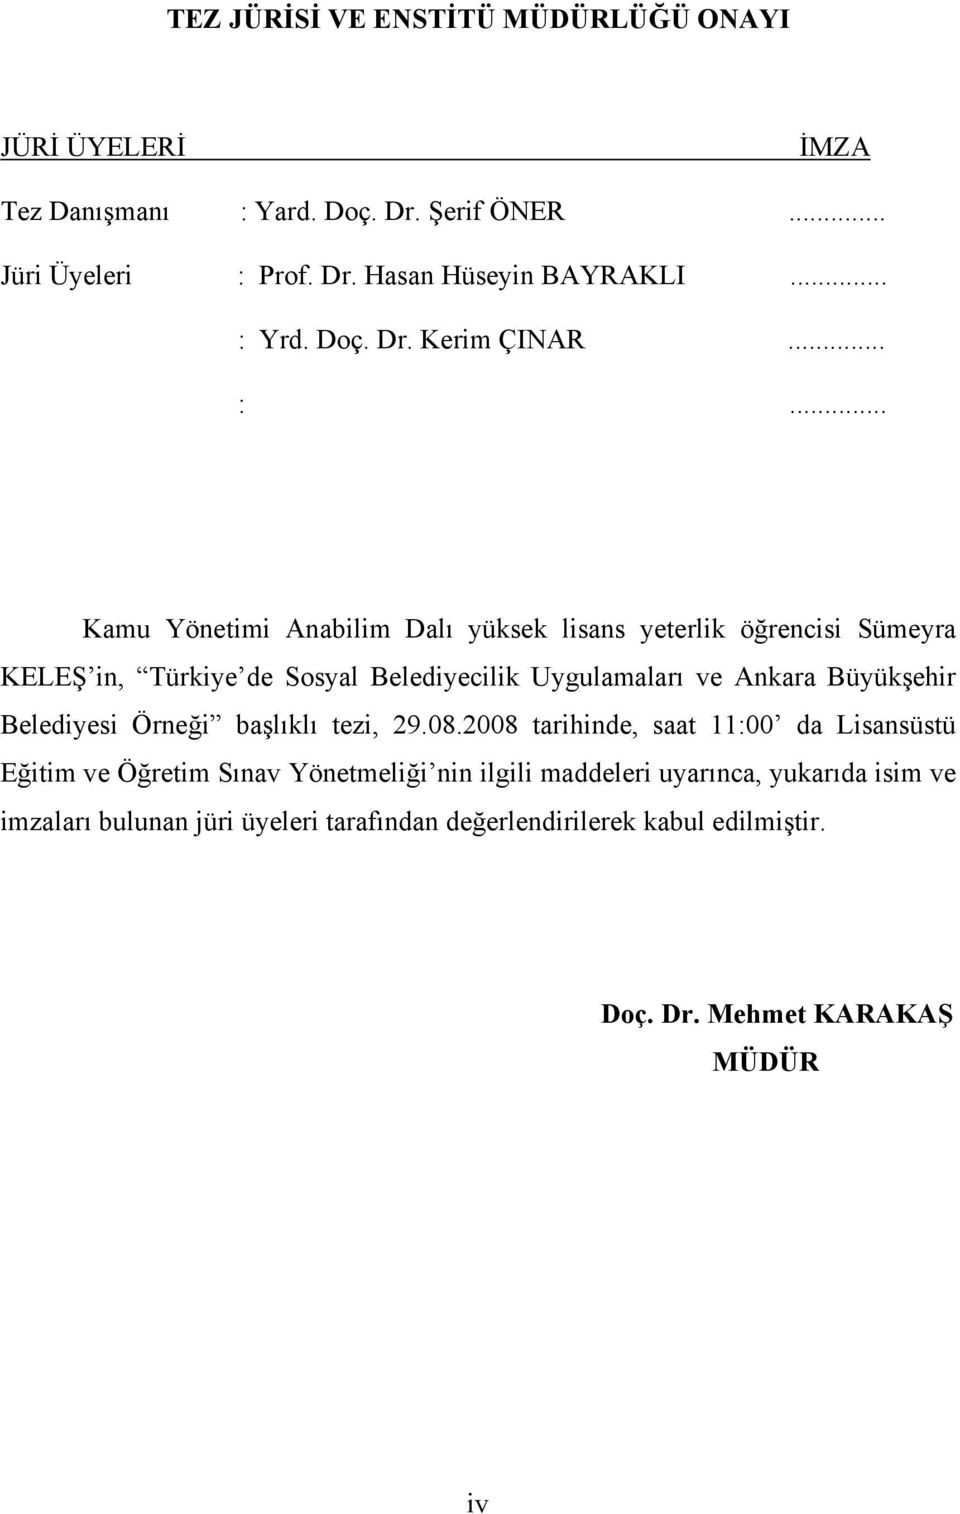 Uygulamaları ve Ankara Büyükşehir Belediyesi Örneği başlıklı tezi, 29.08.